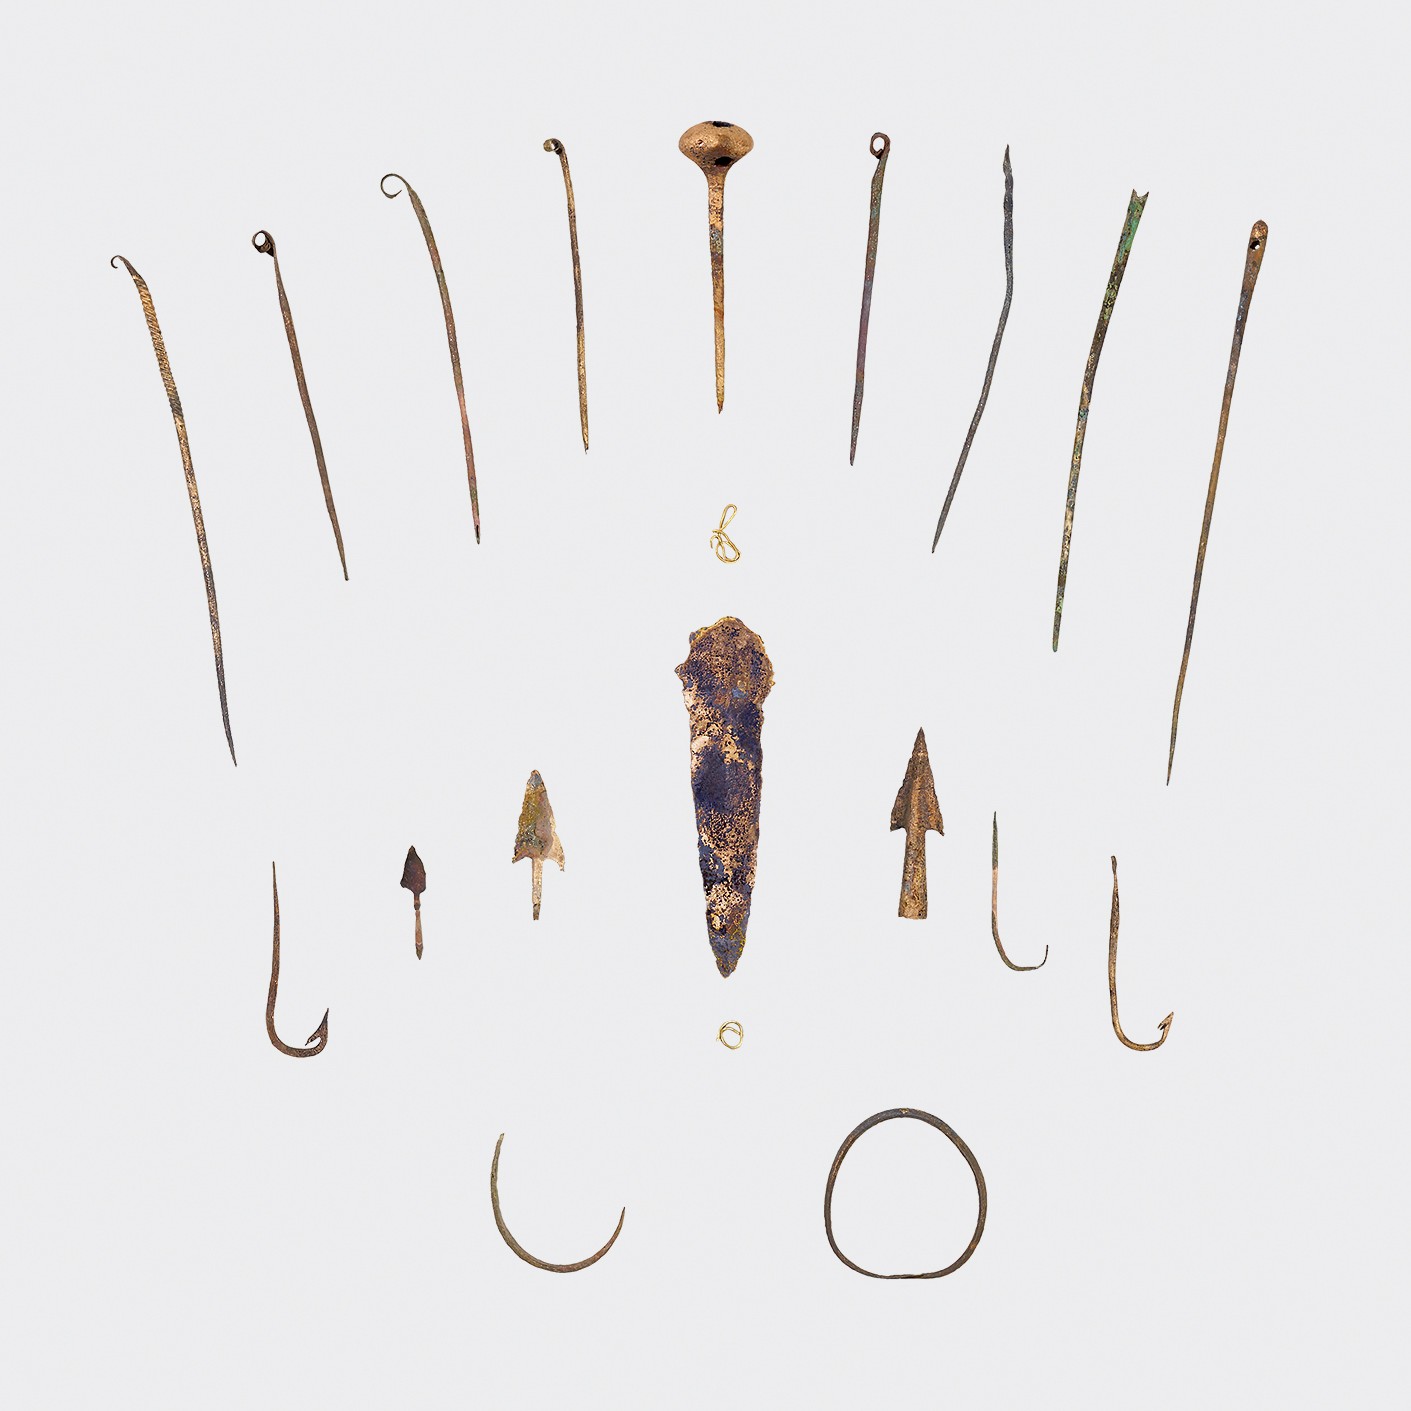 Objets de l’Age du Bronze découverts lors de la fouille de sauvetage de 2020 dans le lac de Thoune. Certains sont présentés dans l’exposition « Nouveautés archéologiques ».